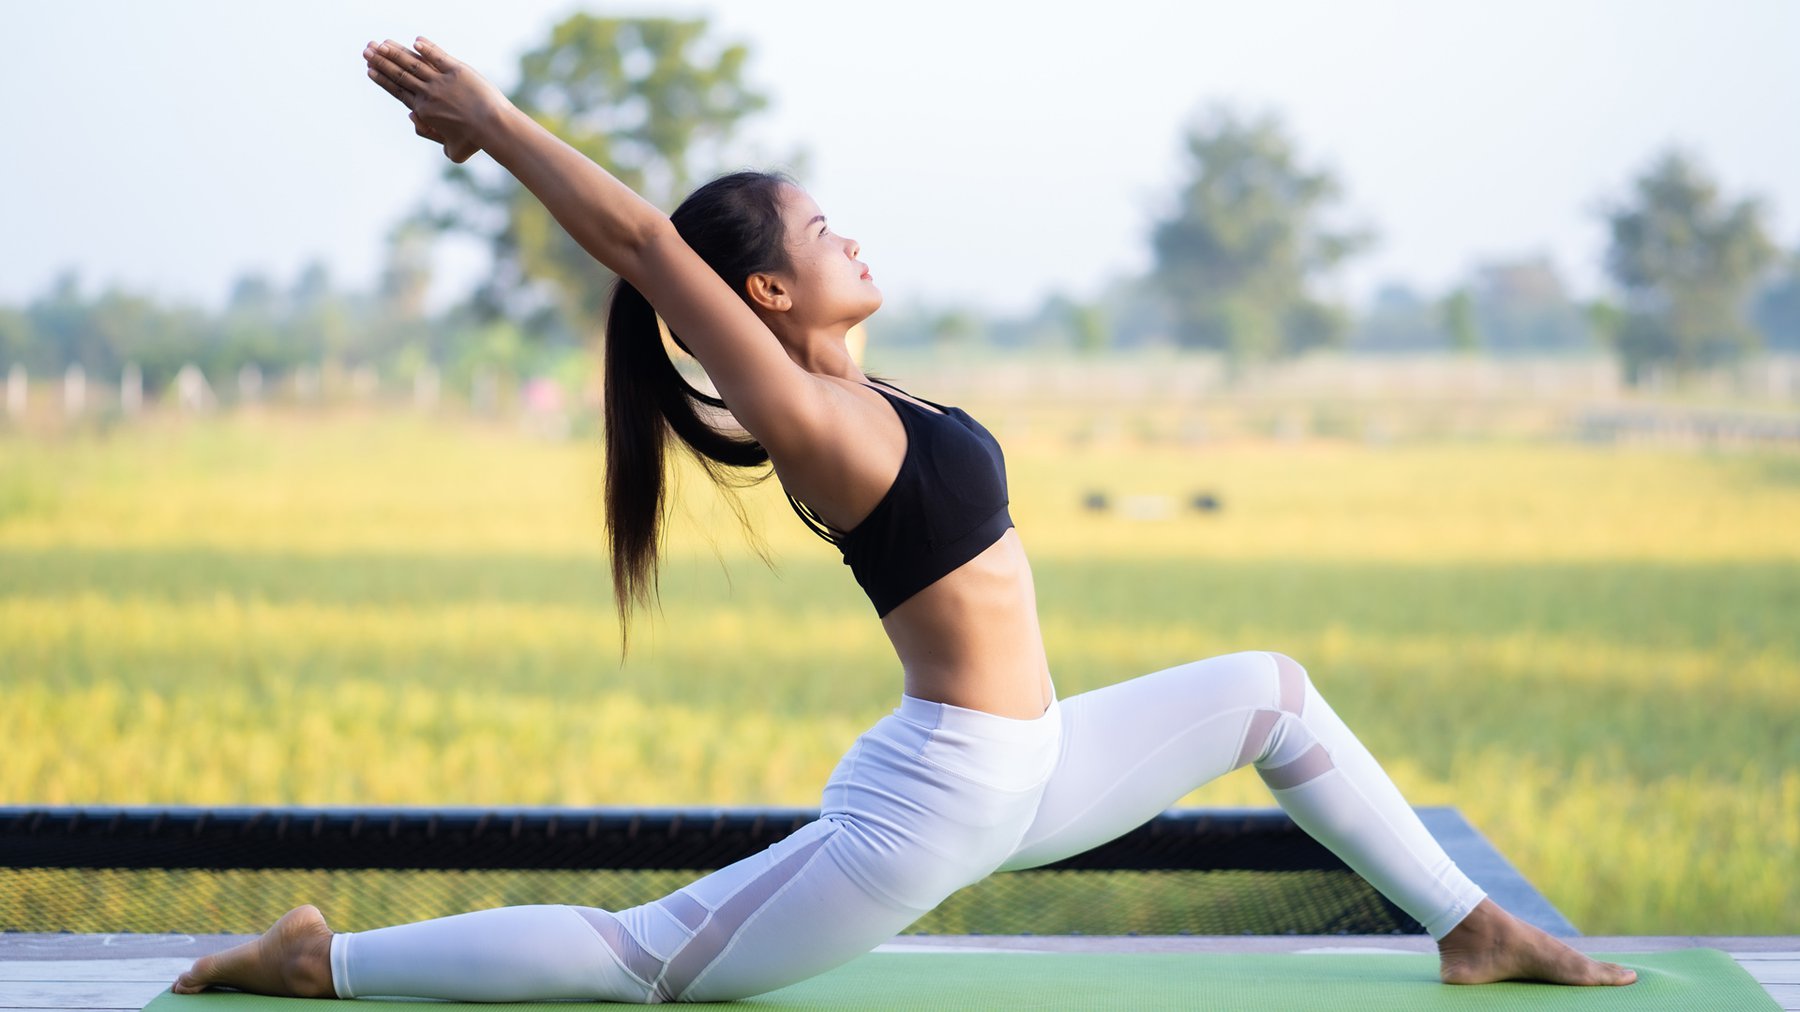 Yoga là một phương pháp thể dục nhẹ nhàng và ít tác động